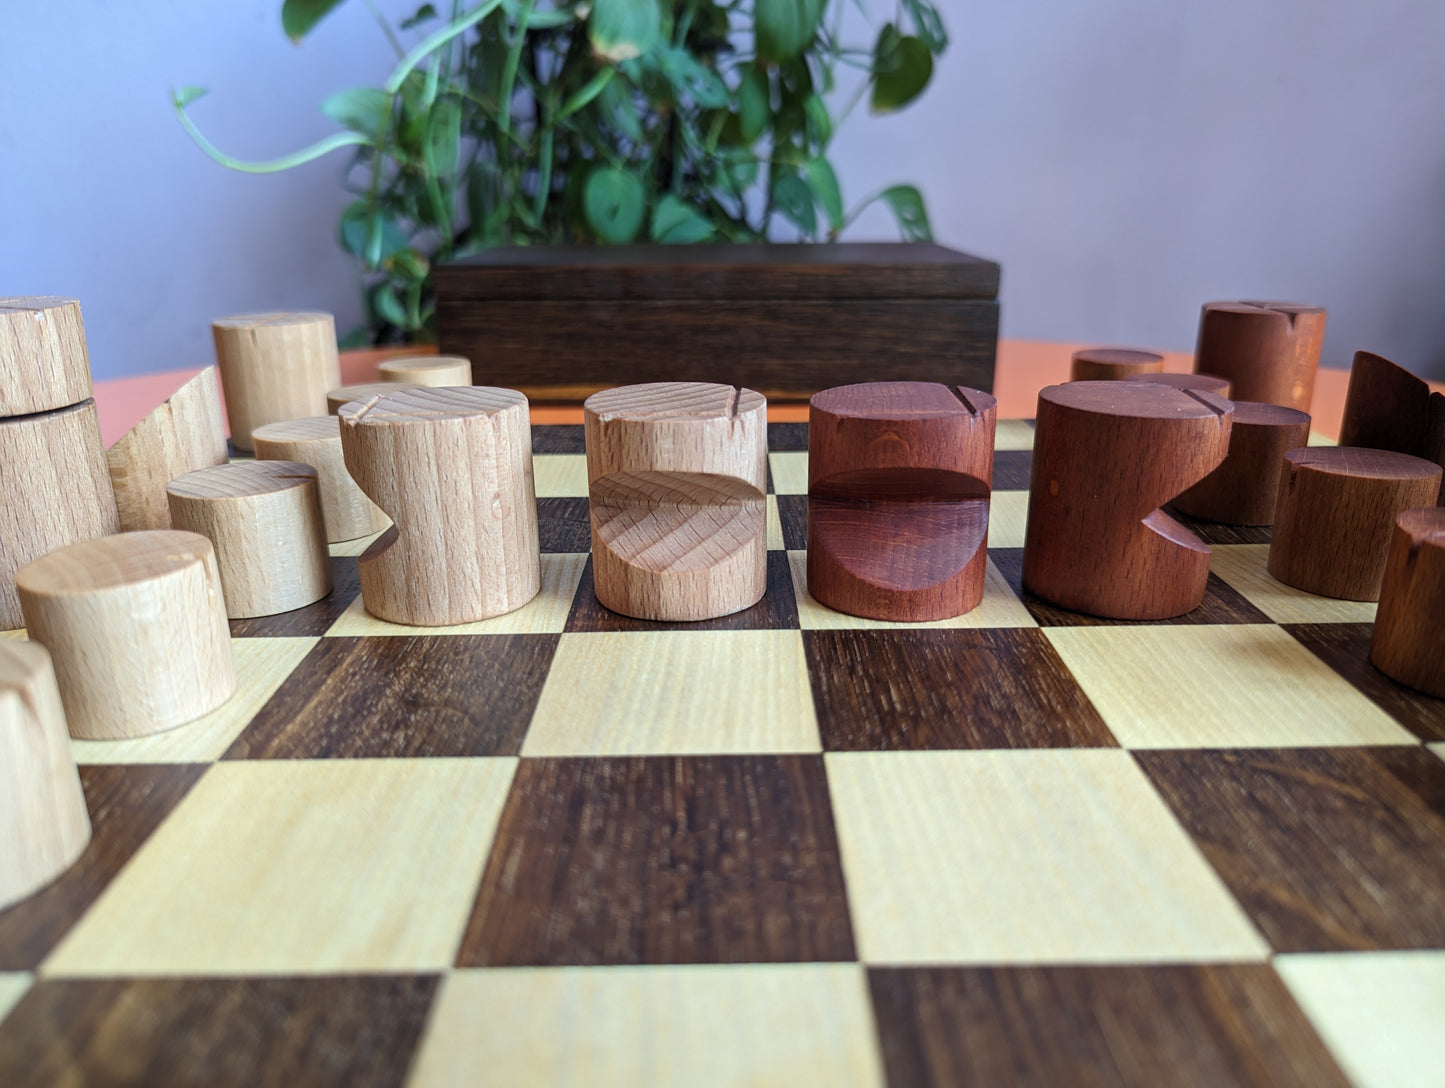 Wooden Chess Set by WoodIdeas. Beech wood handmade Modern chess